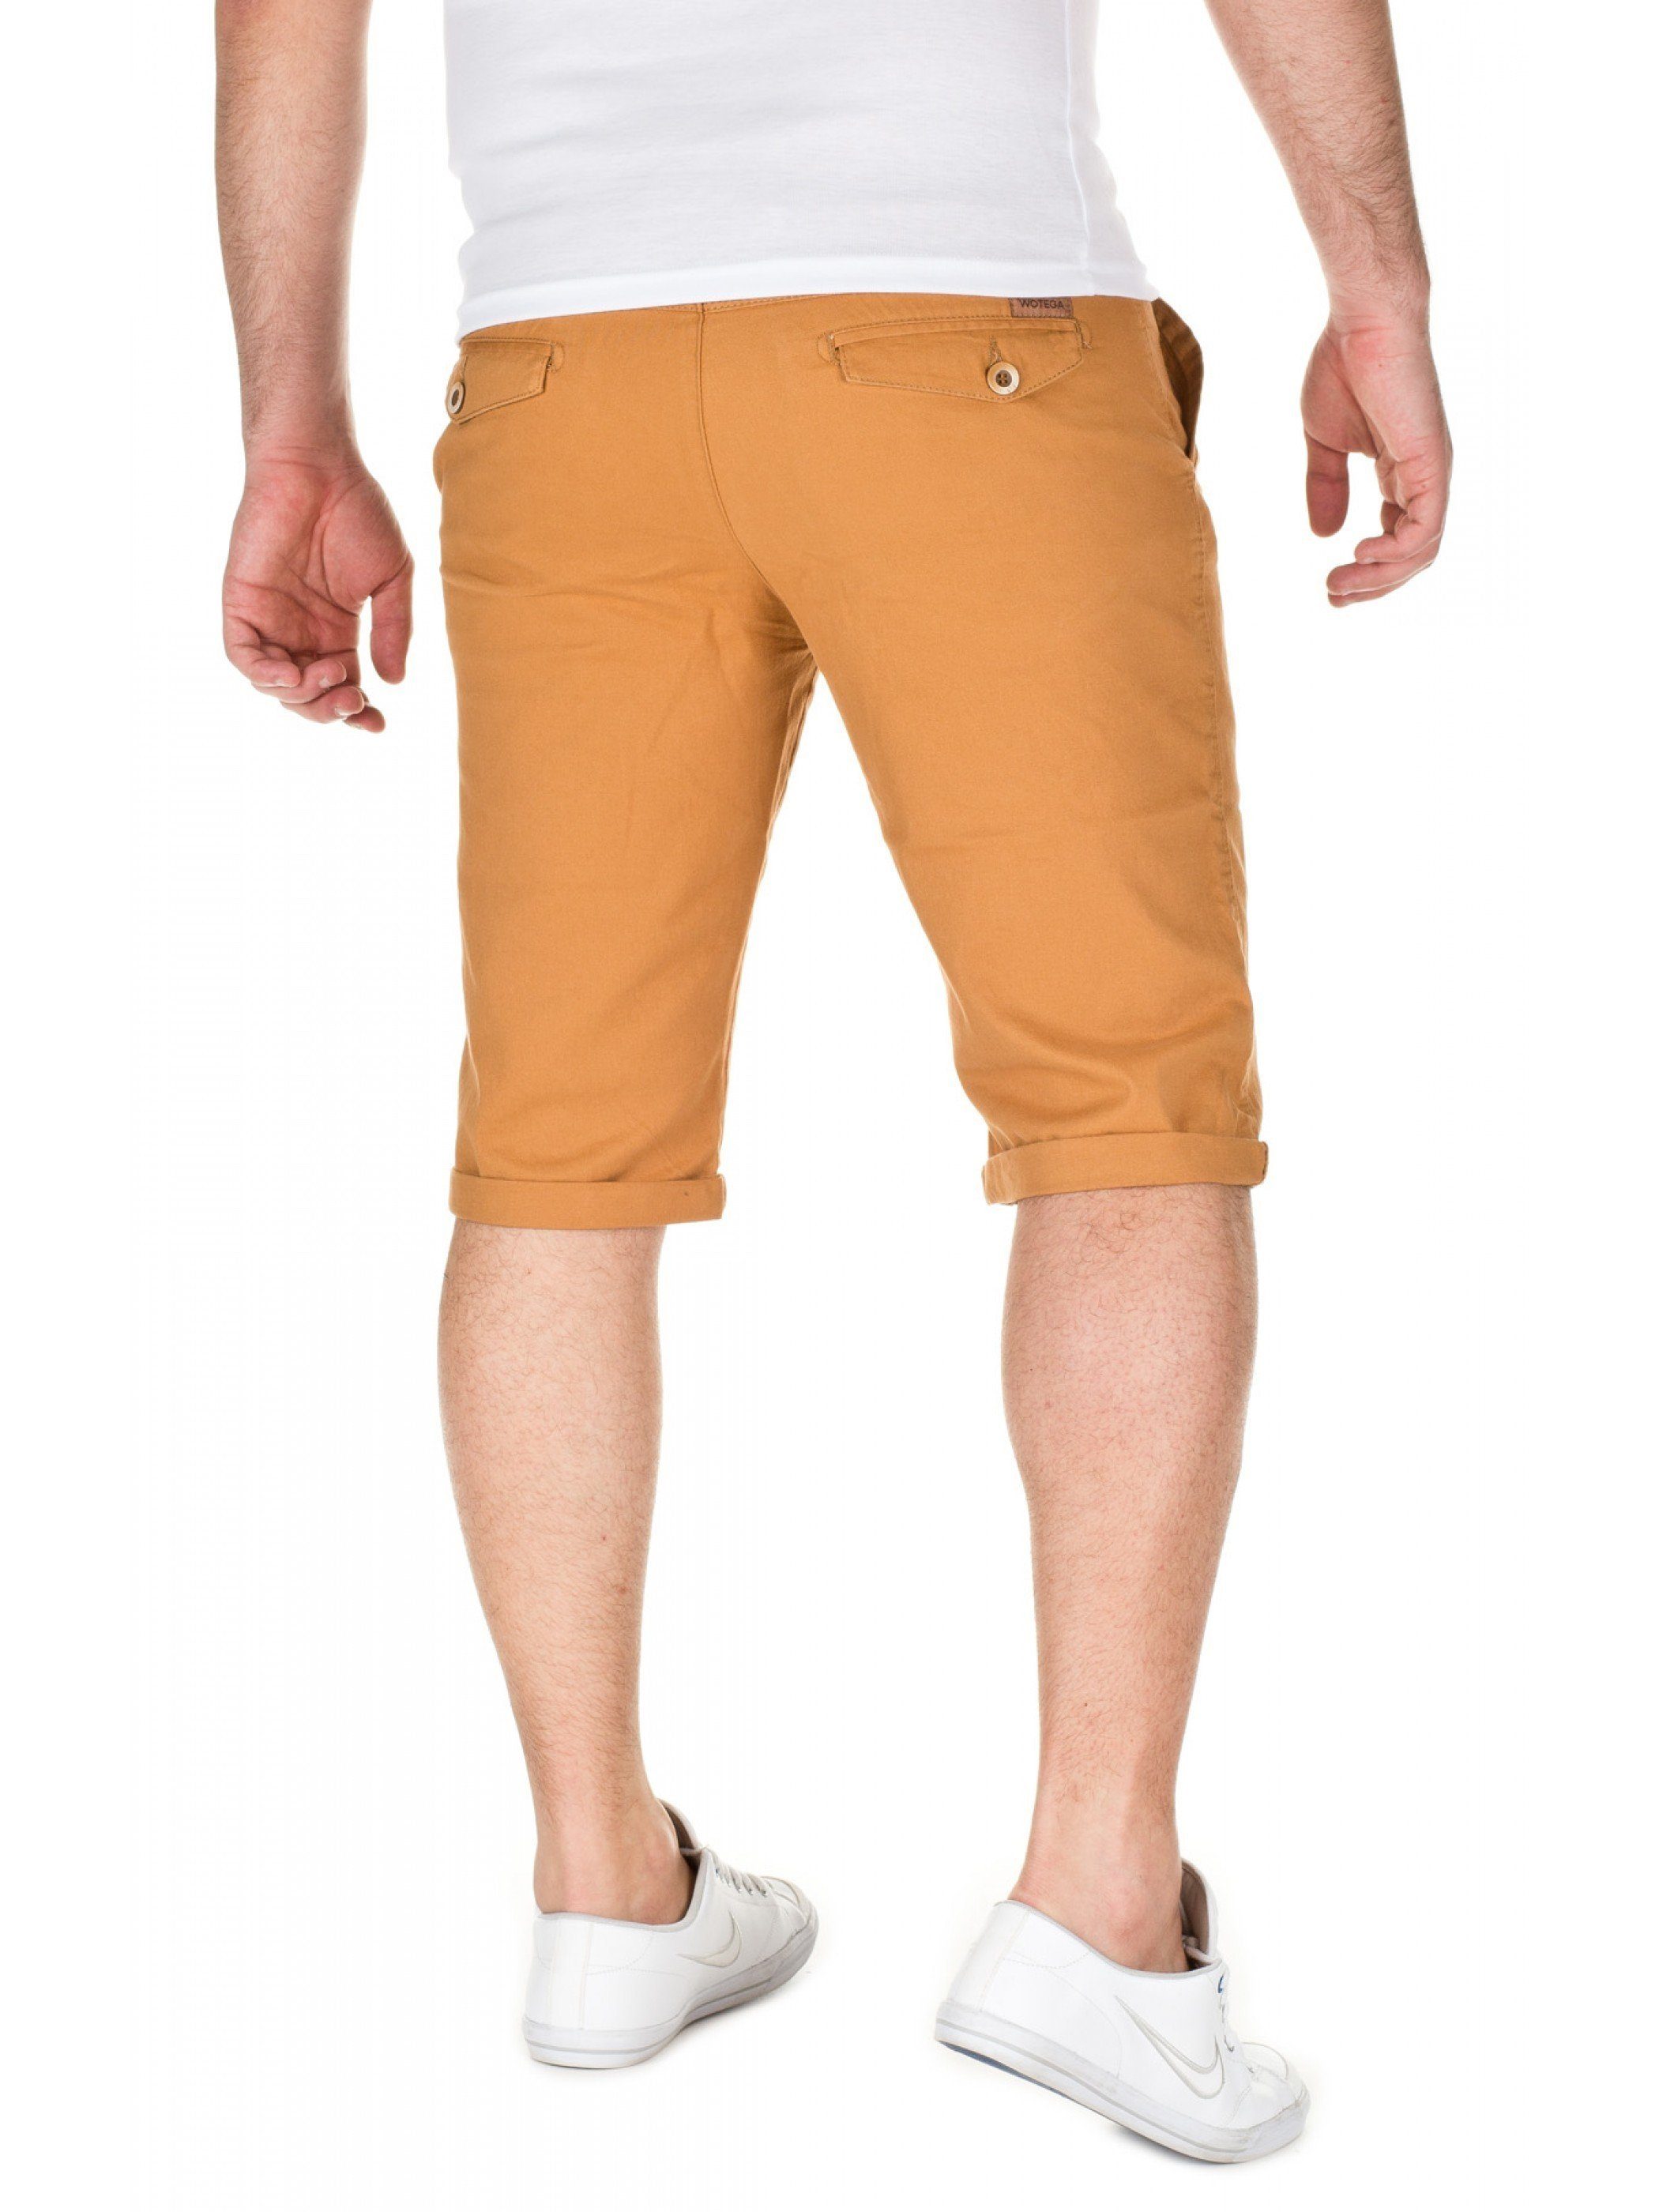 82295) Alex WOTEGA Goldfarben gold shorts - (mustard Shorts WOTEGA Chino Unifarbe in